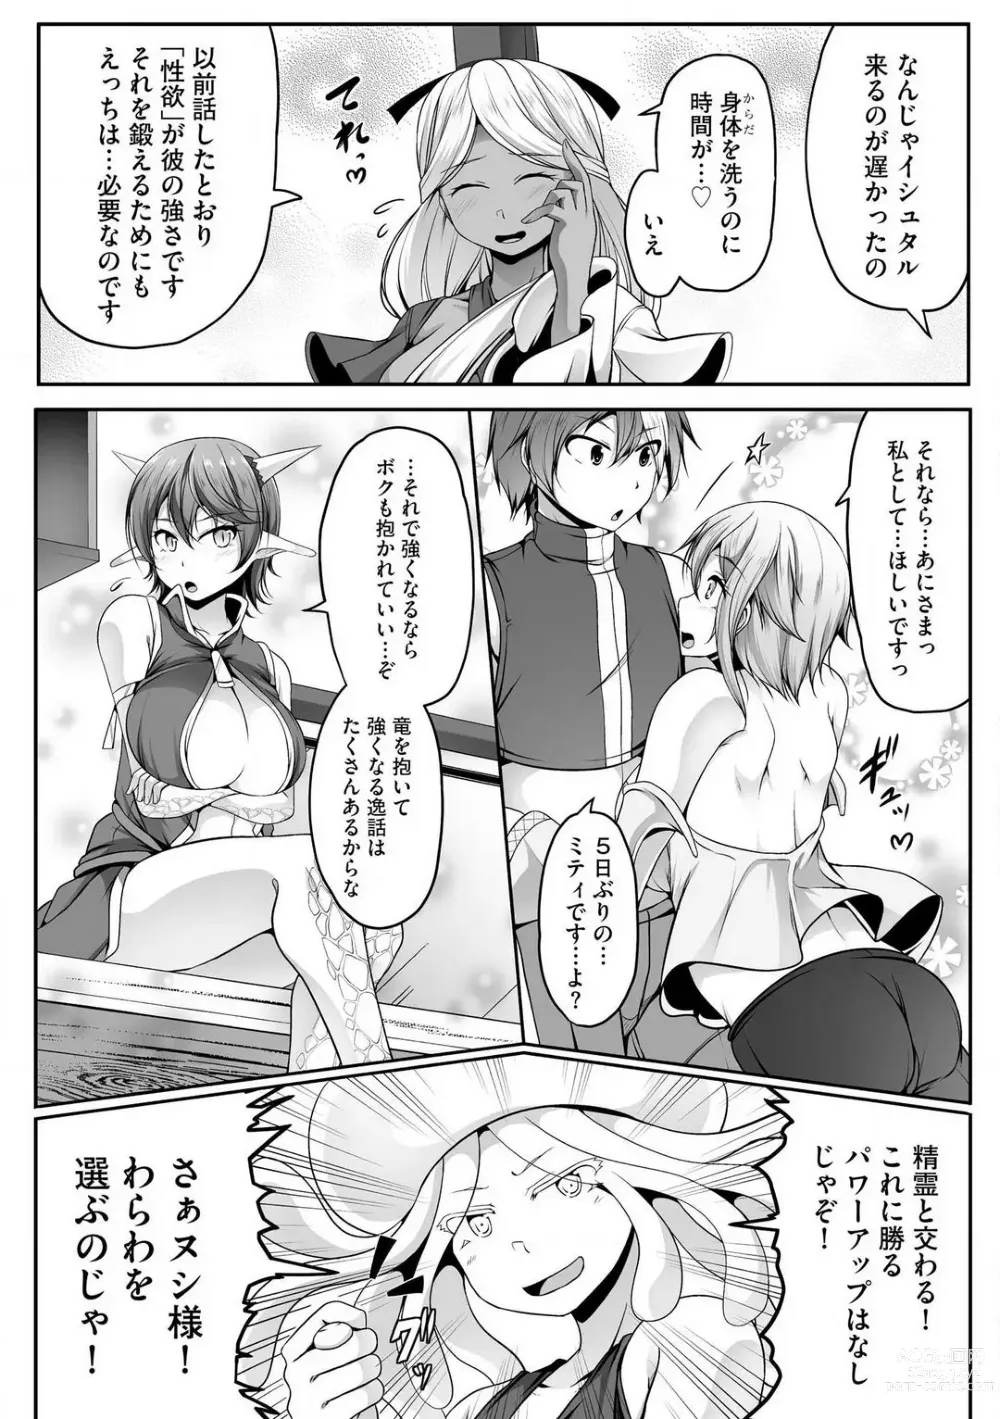 Page 349 of manga Cheat Skill Shihai